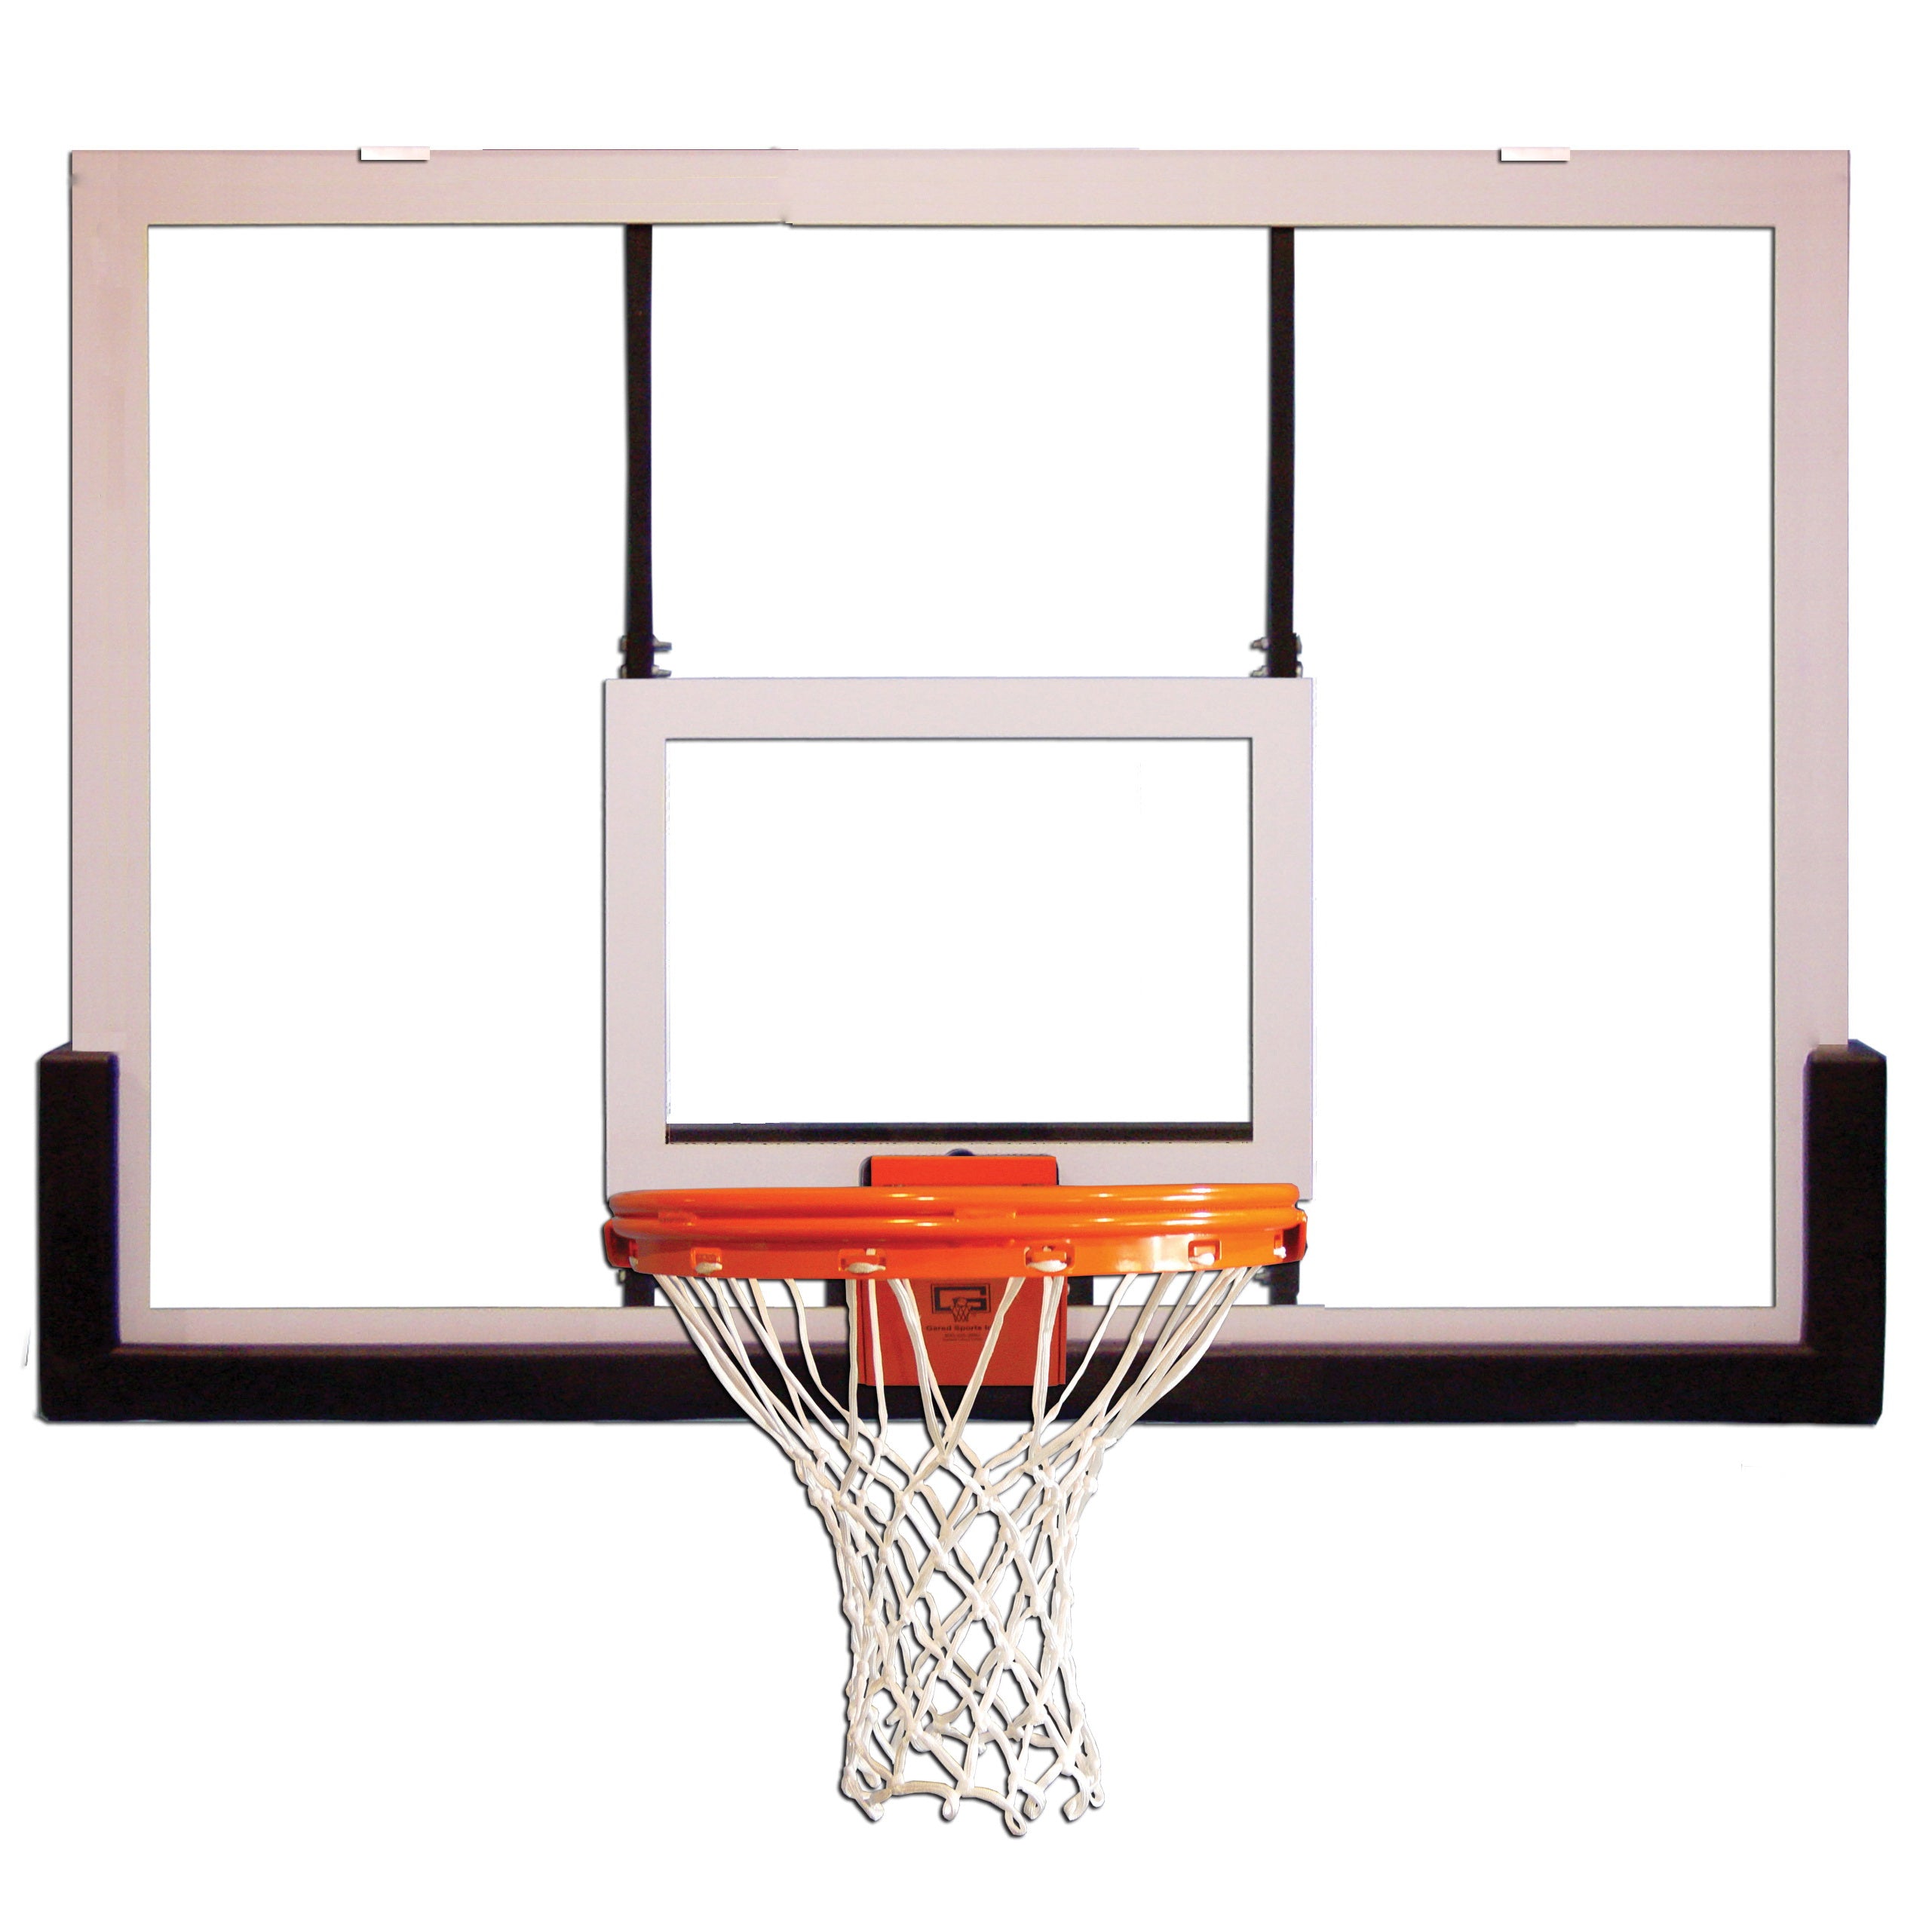 Gared Recreational Acrylic Basketball Backboard